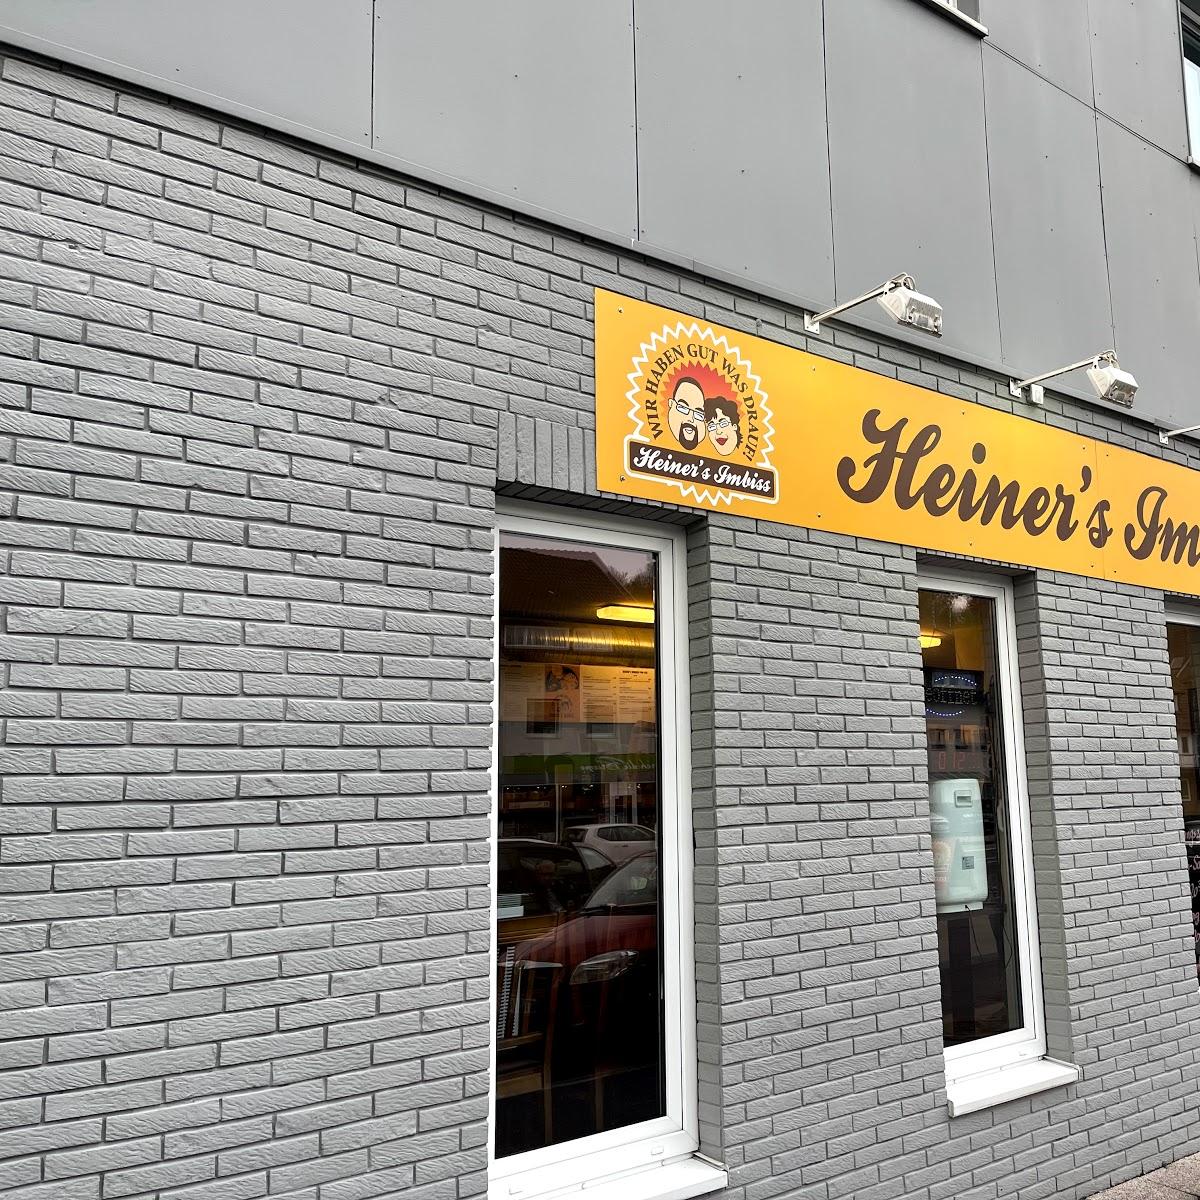 Restaurant "Heiner